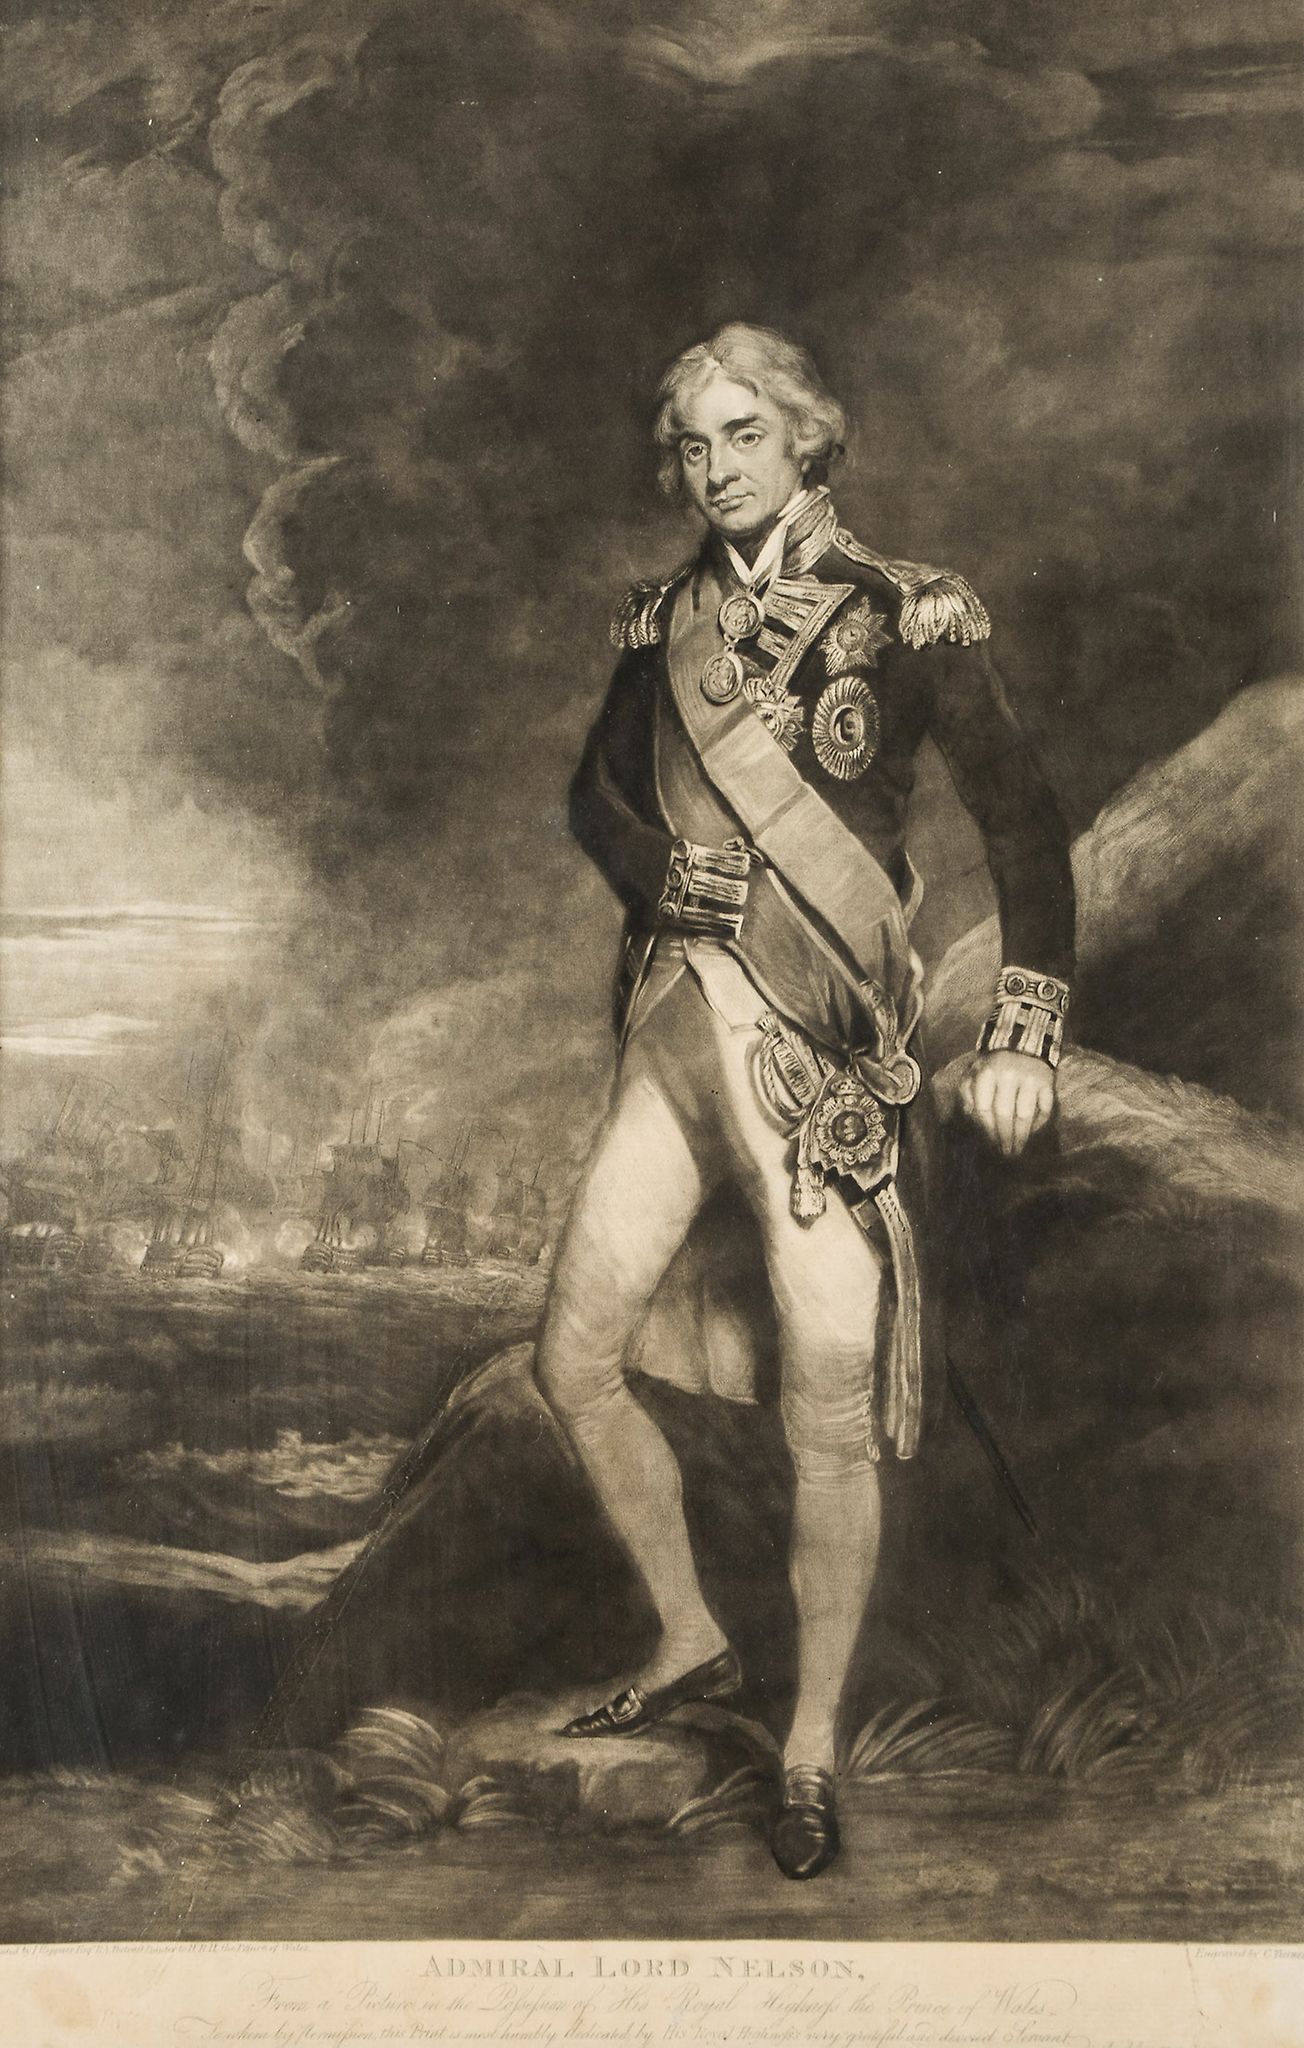 Turner (Charles) - Admiral Lord Nelson, full length portrait after J. Hoppner,  mezzotint,